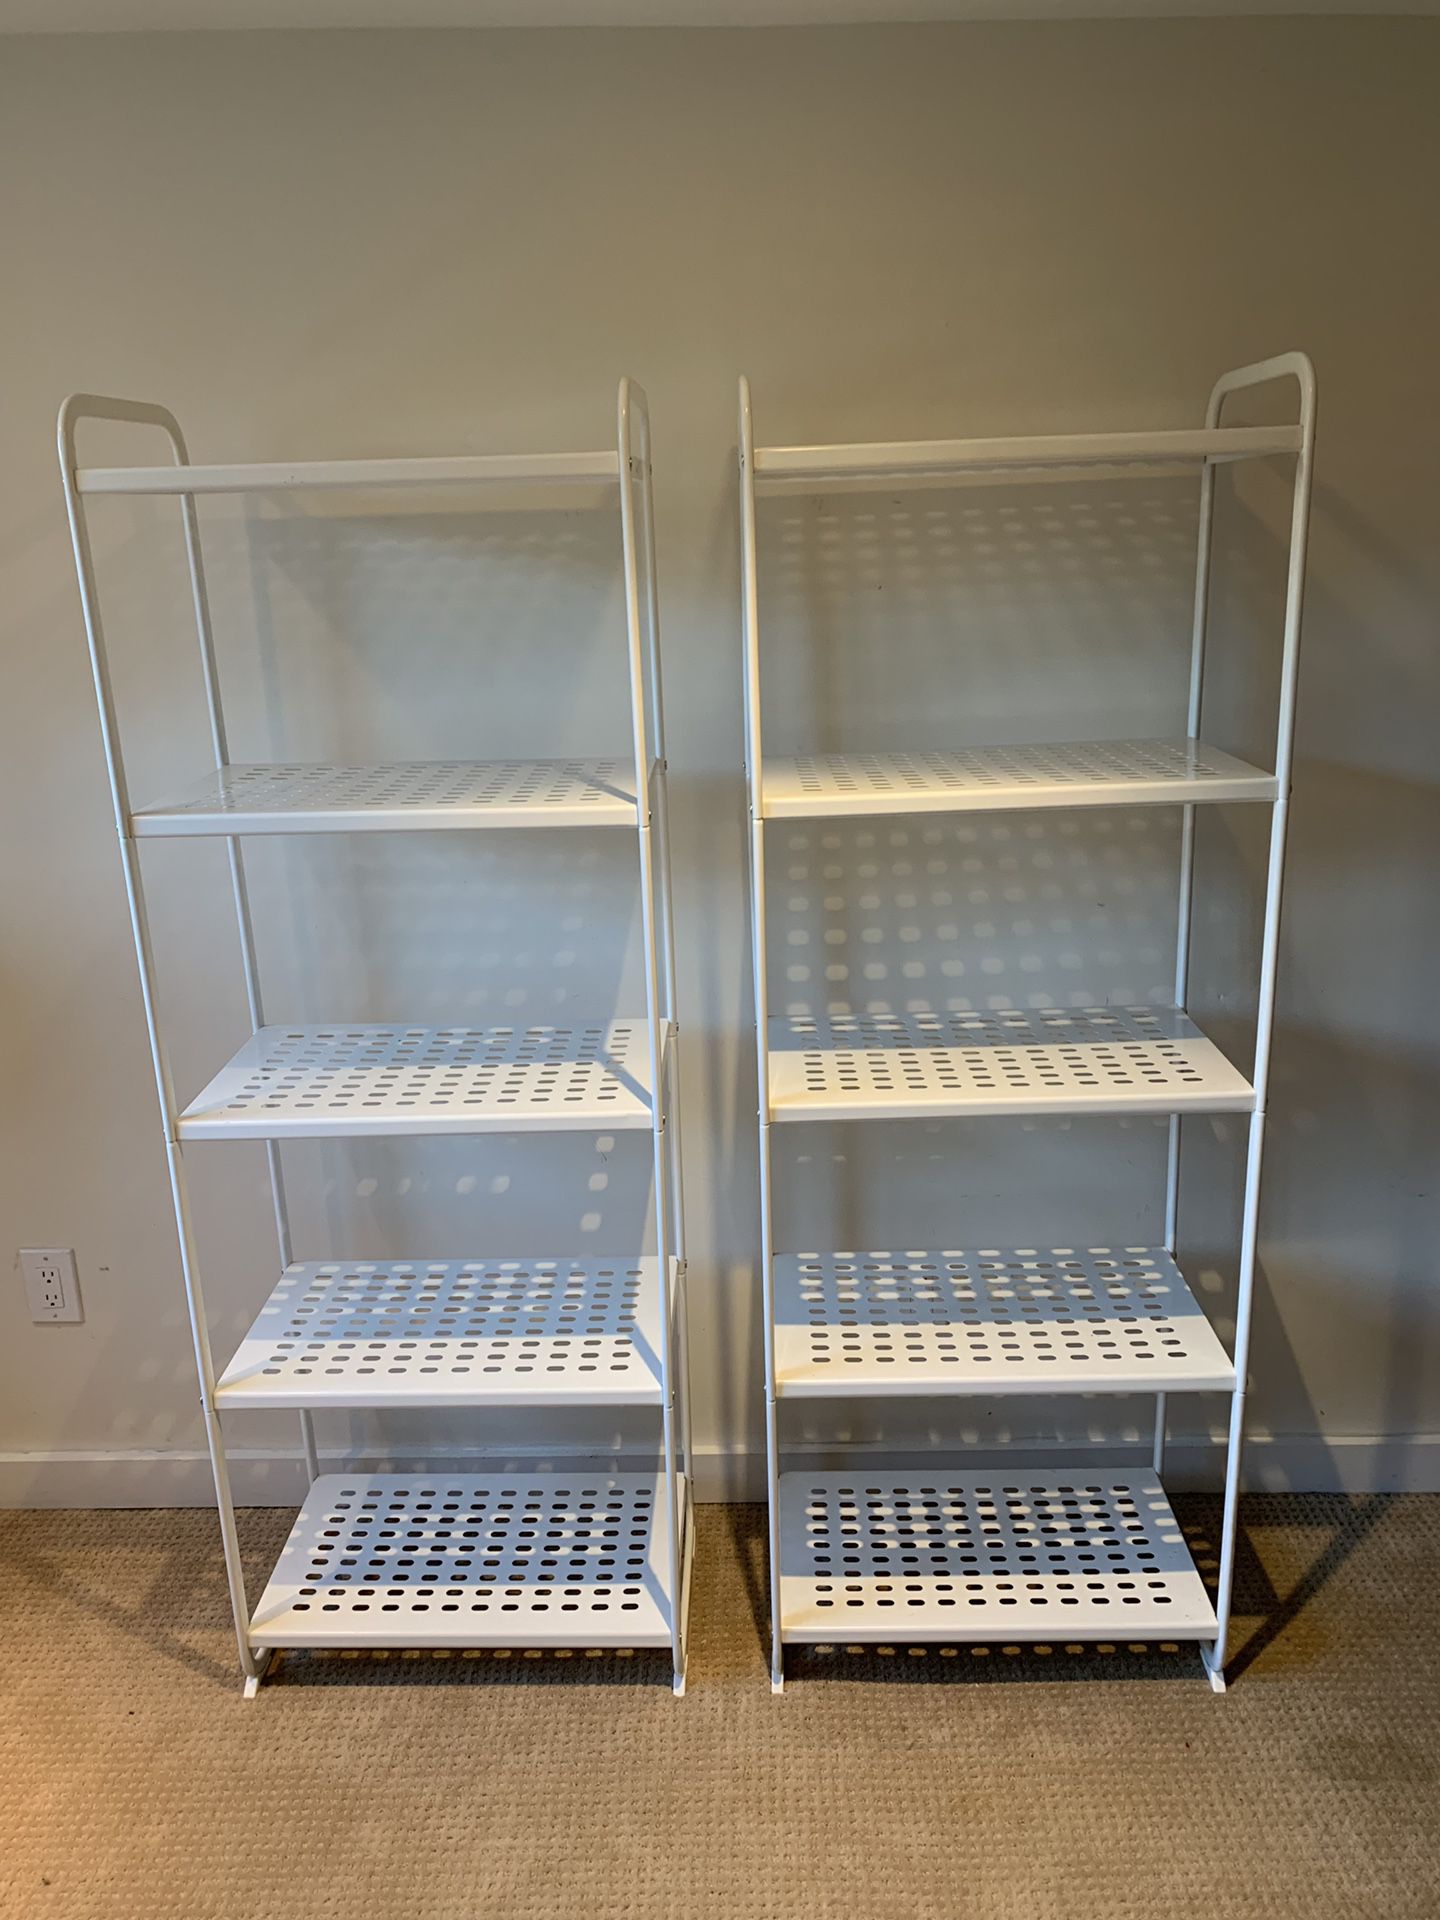 Two white metal shelves IKEA